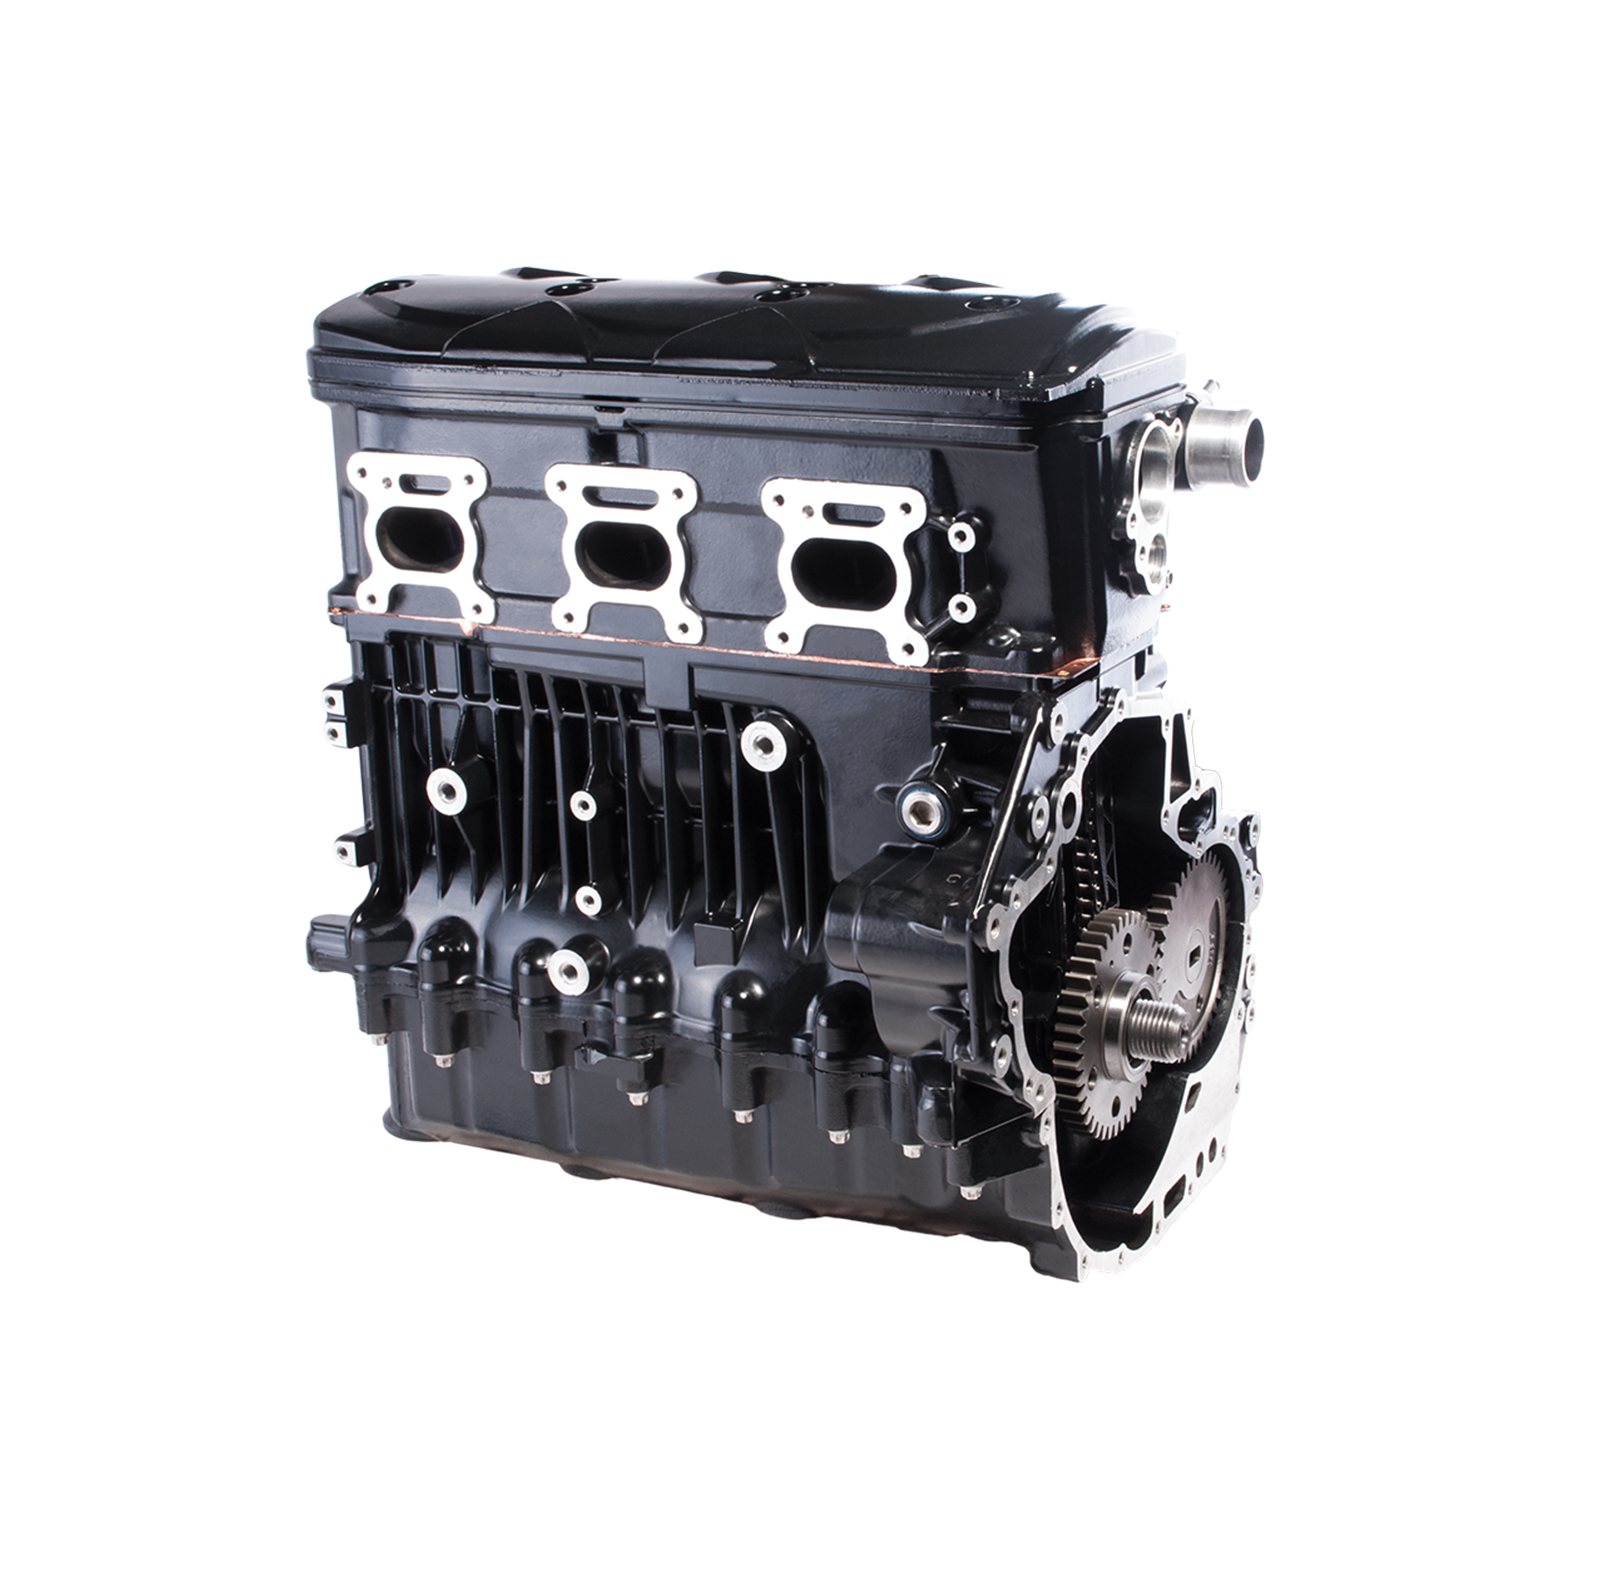 Fits Sea-Doo Engine 4-Tec SC 2006-2016 (all except 300hp):